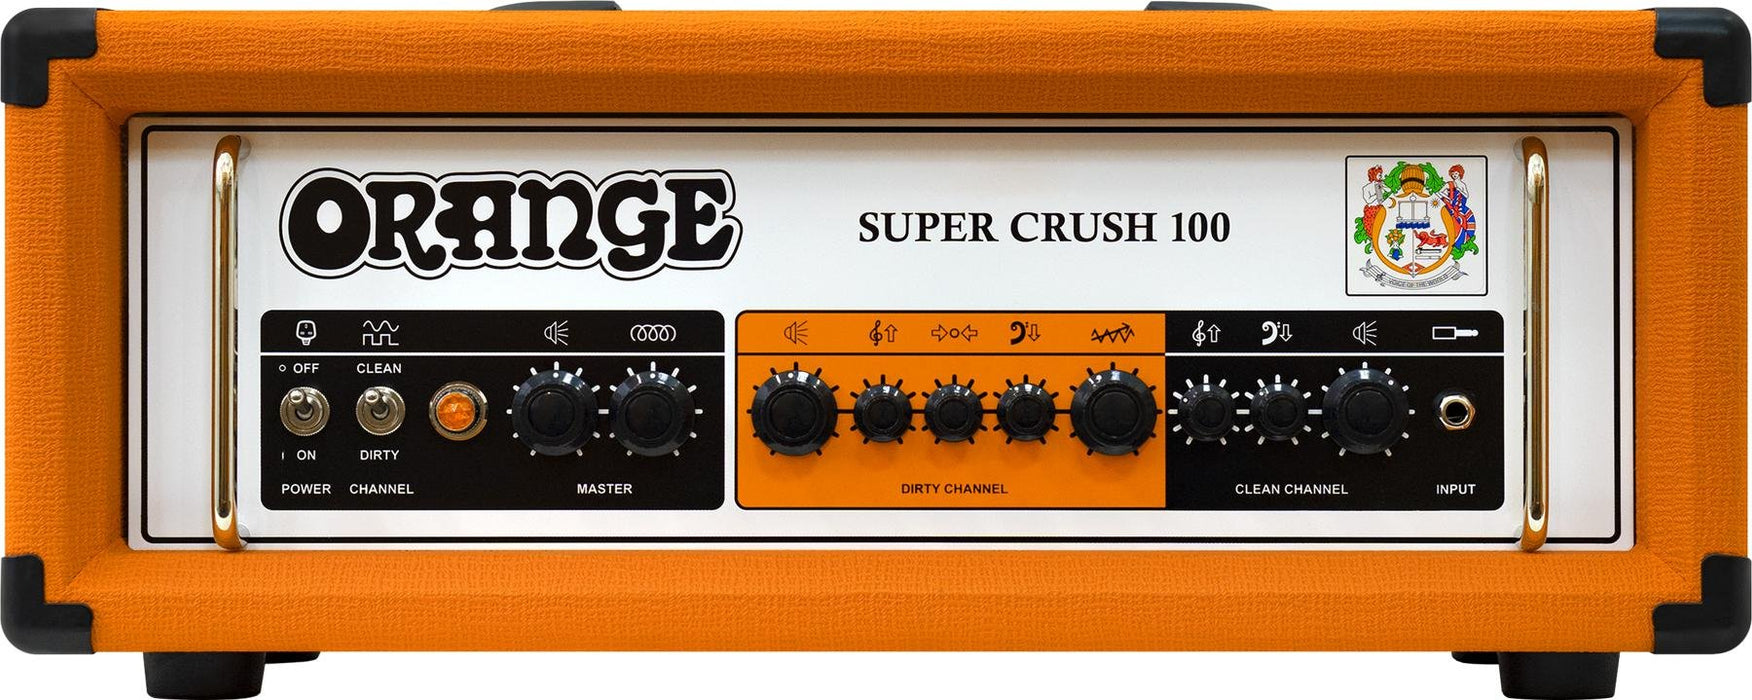 Orange Super Crush 100 - 100-watt Solid-state Head - Orange - Music Bliss Malaysia